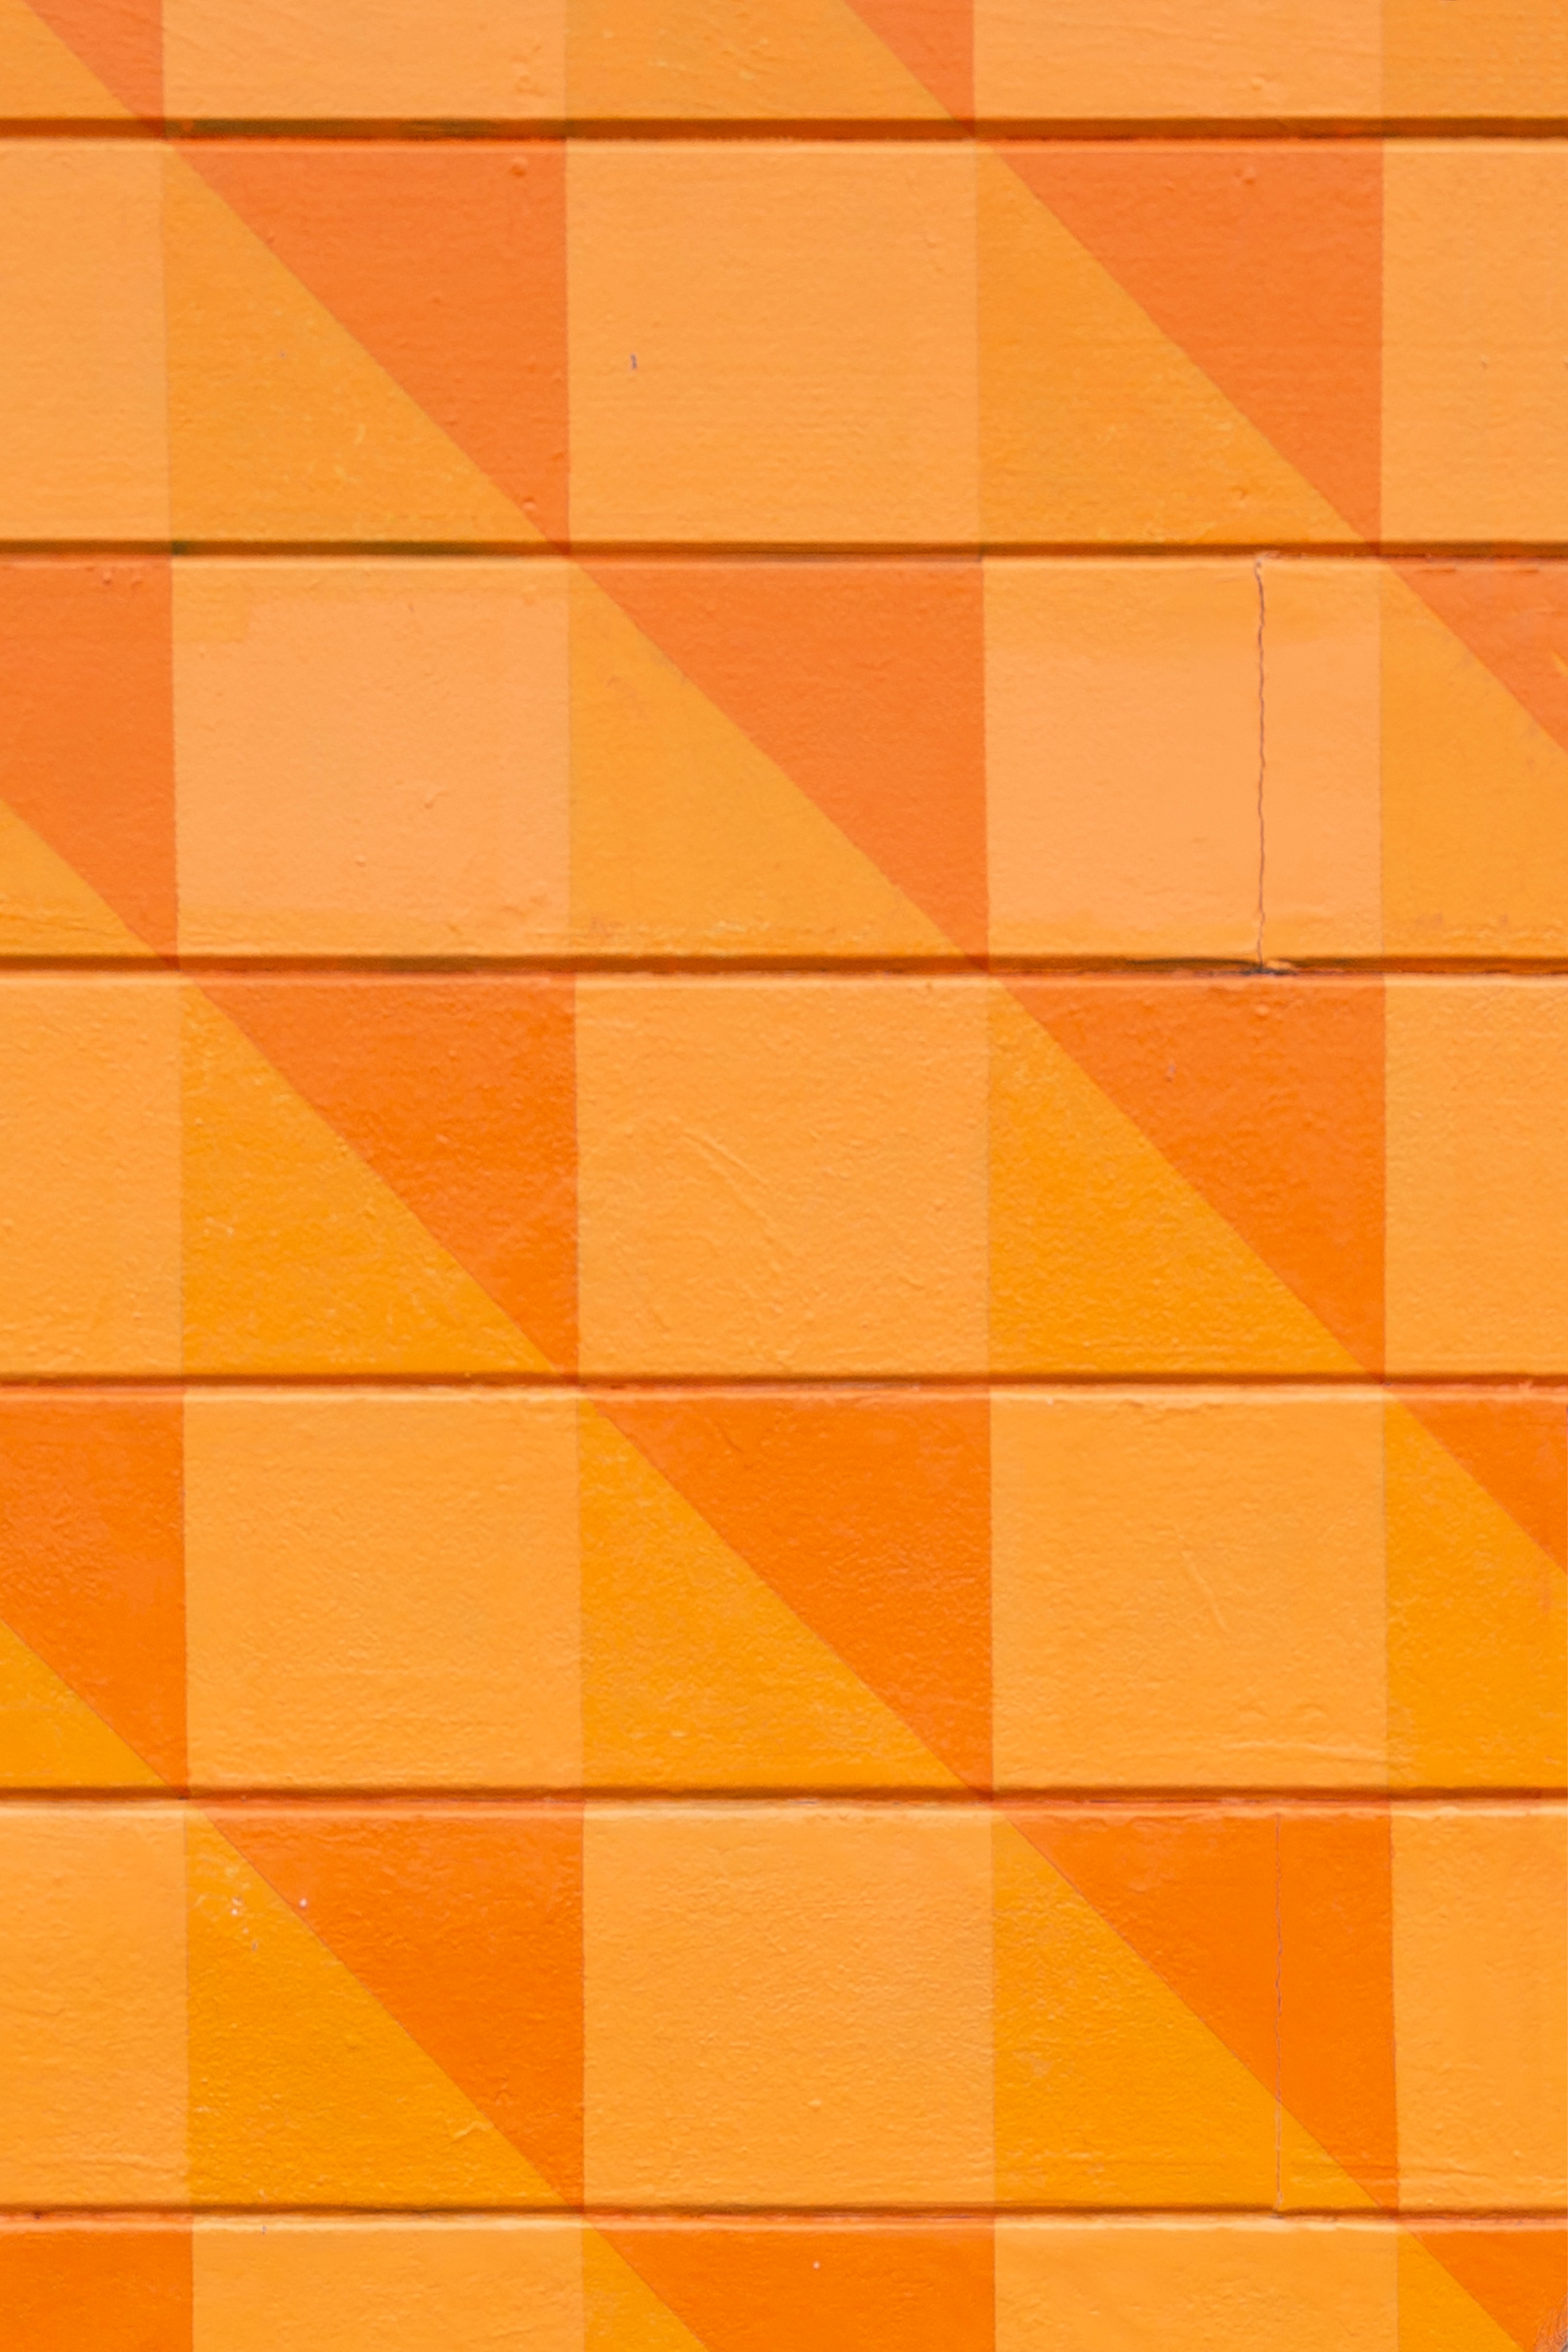 145021 免費下載 橙色 手機壁紙，墙, 质地, 正方形, 纹理 橙色 圖像和手機屏保